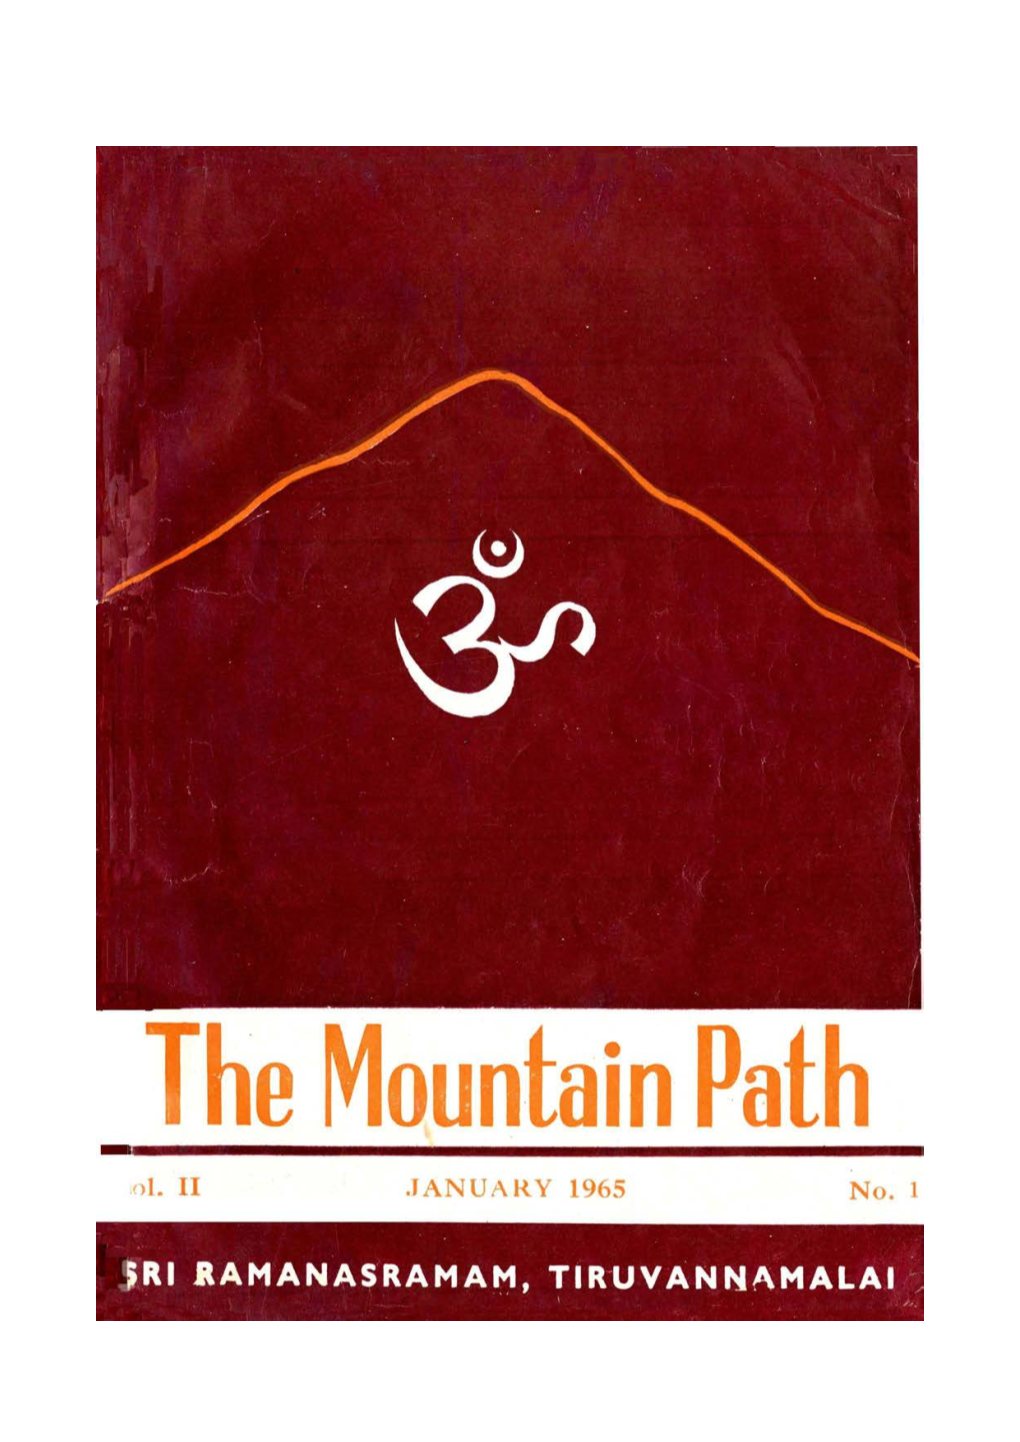 The Mountain Path Iol.Li JANUARY 1965 No